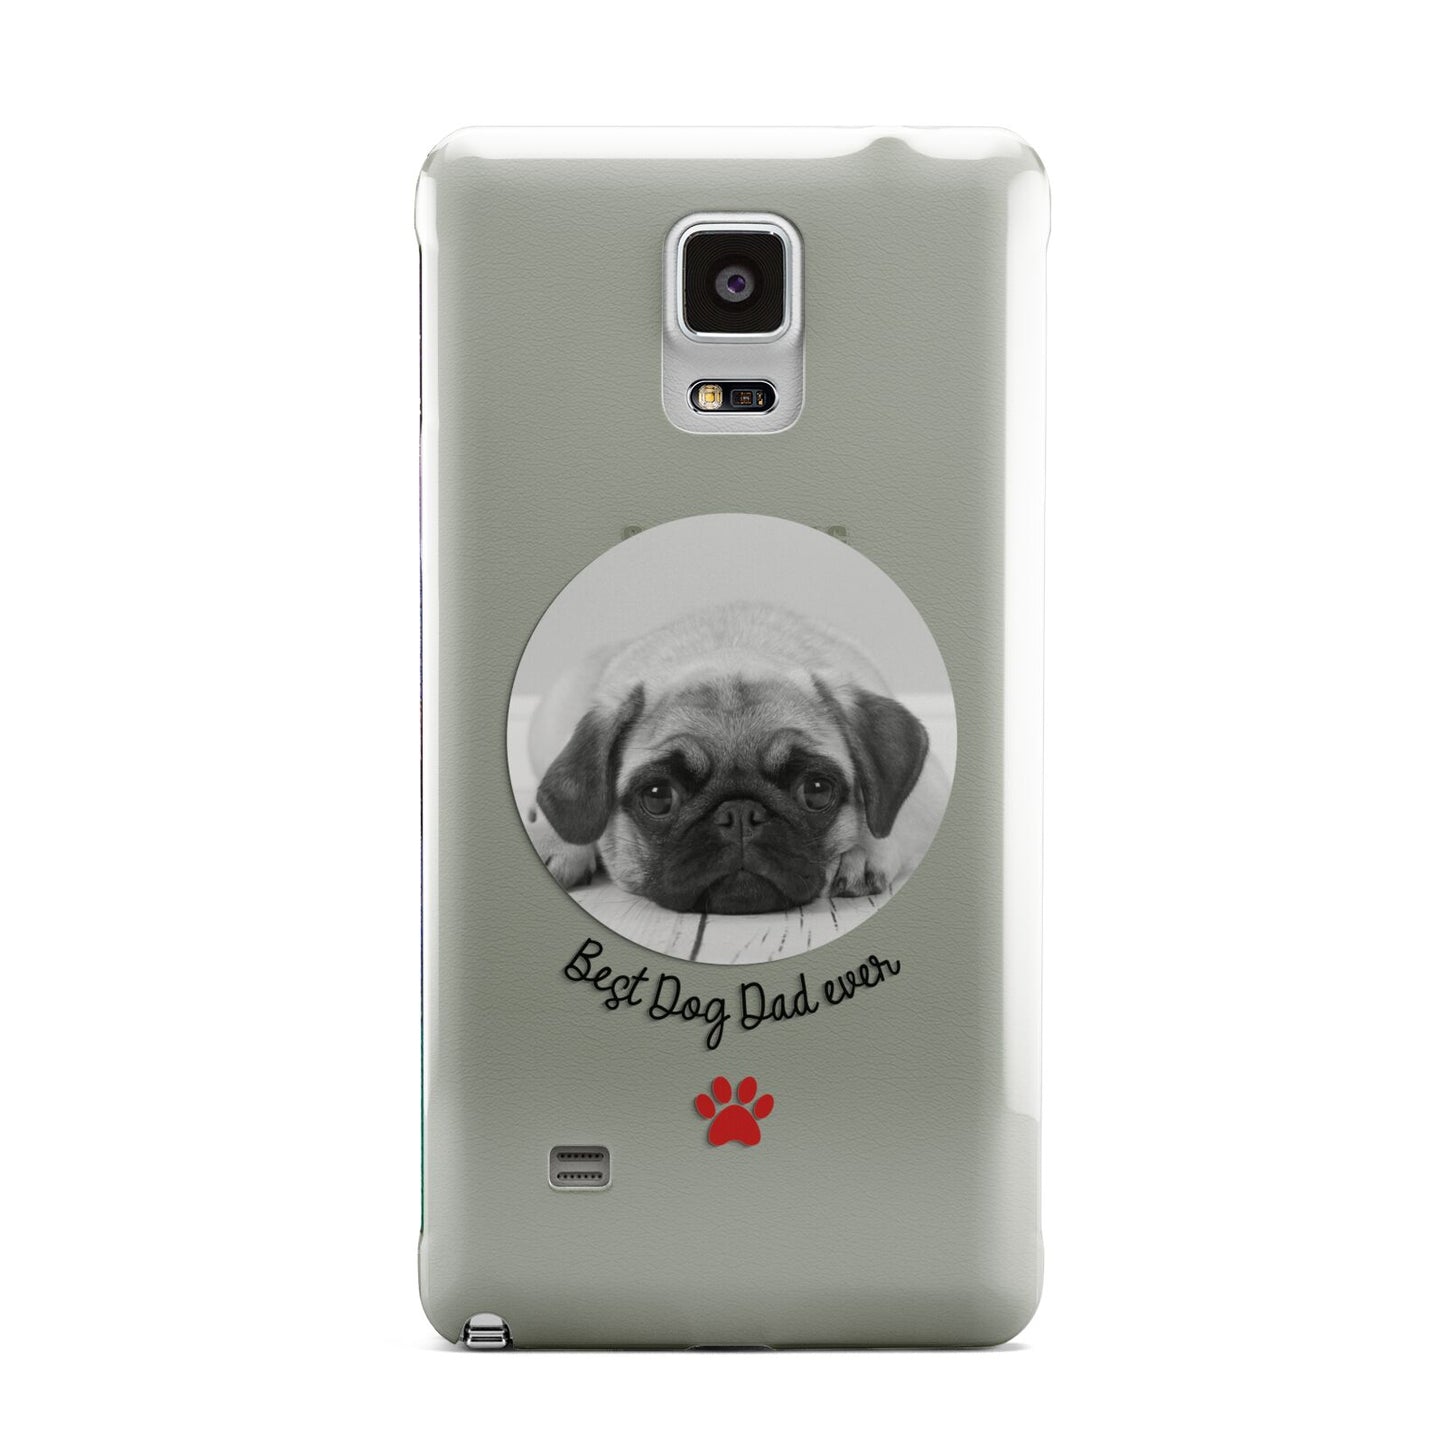 Best Dog Dad Ever Photo Upload Samsung Galaxy Note 4 Case